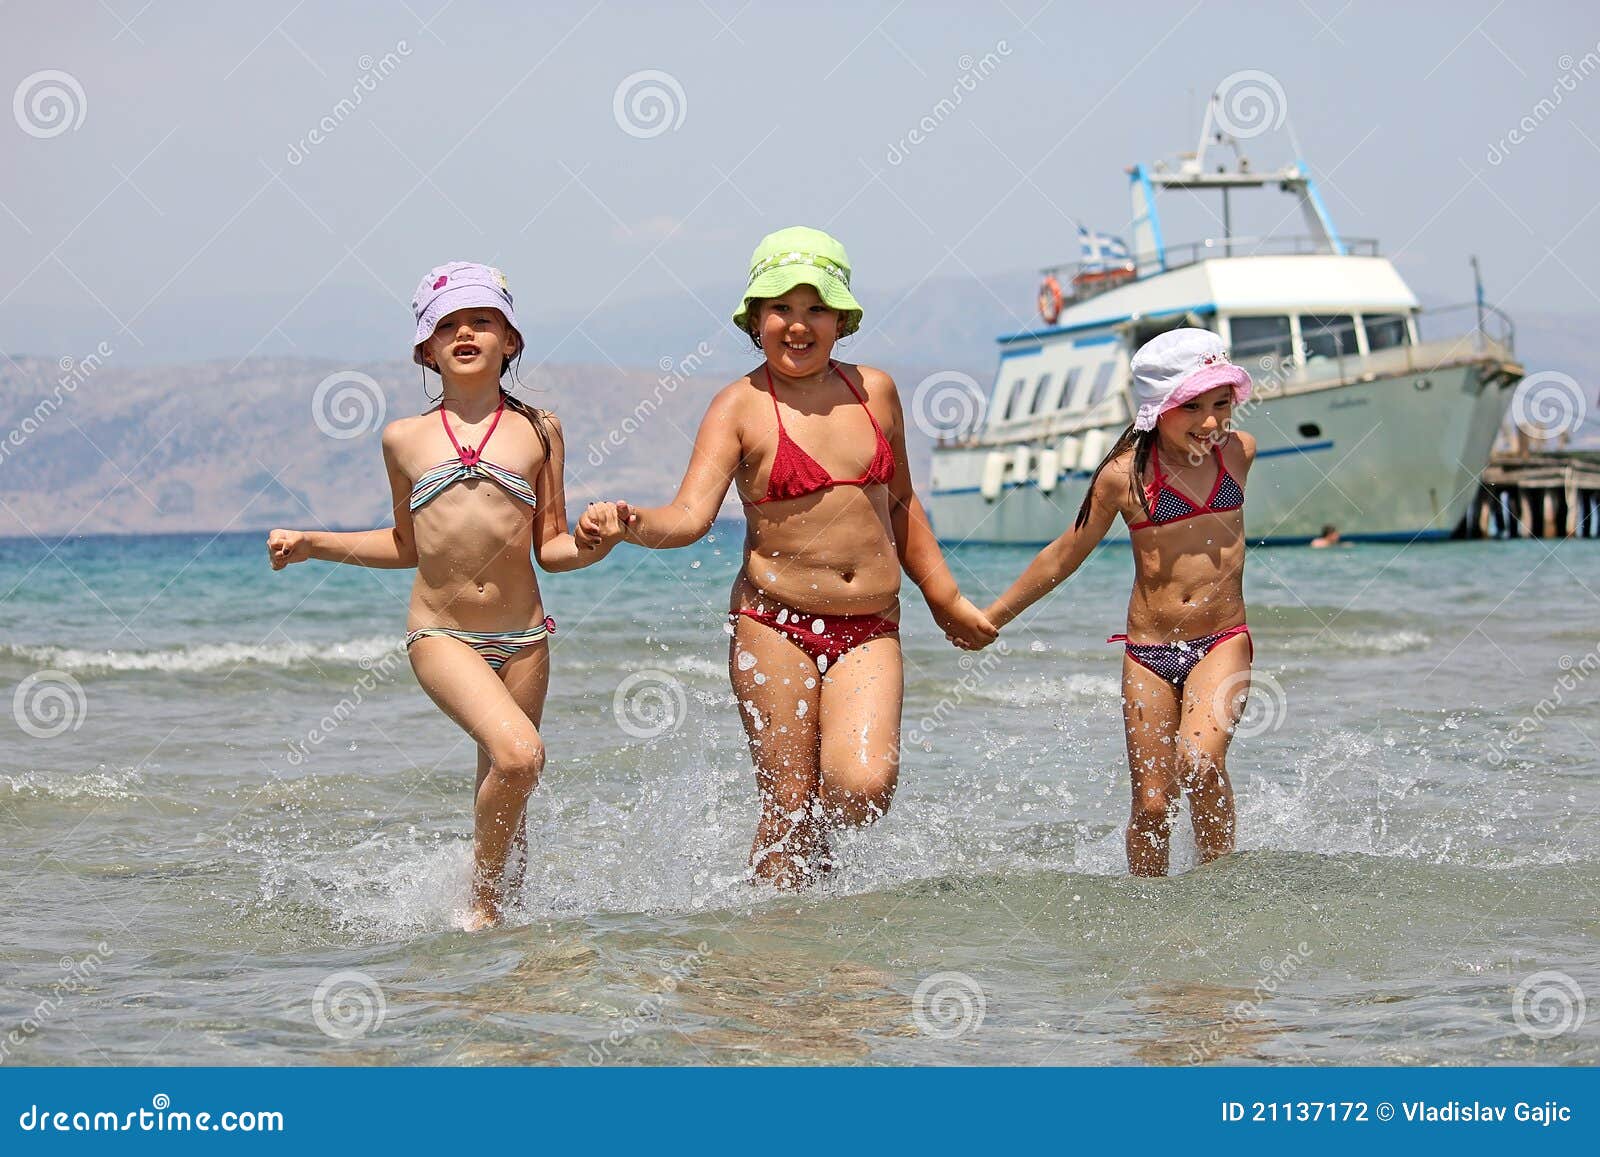 с детьми голым на пляж фото 97